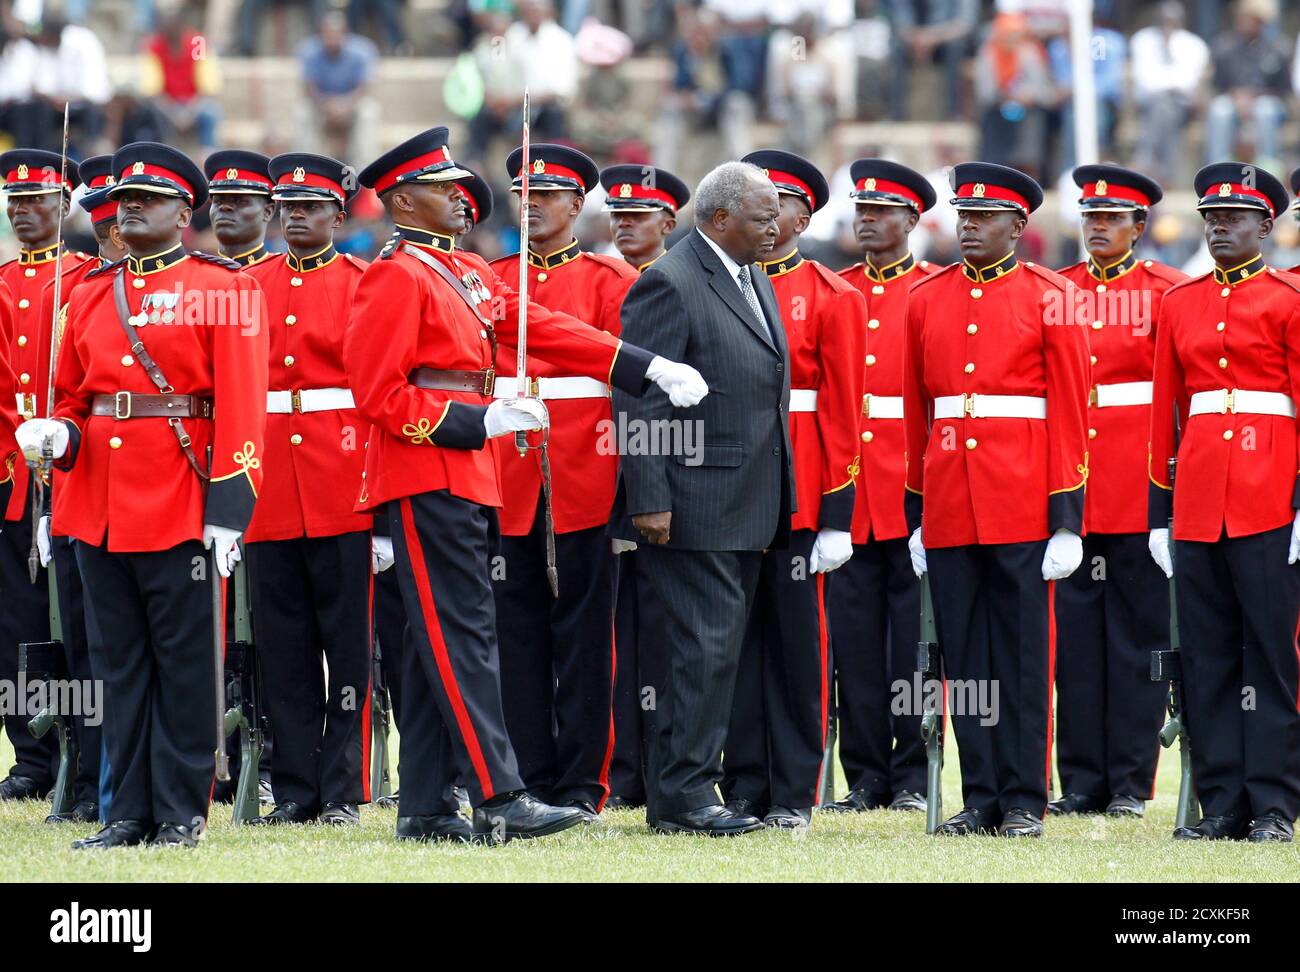 Le président du Kenya, Mwai Kibaki, inspecte une garde d'honneur lors des célébrations de la Journée du Machujaa (Journée des héros) au stade national de Nyayo à Nairobi le 20 octobre 2012. La fête nationale commémore ceux qui ont pris part à la lutte du pays pour la libération. REUTERS/THOMAS MUKOYA (KENYA - TAGS: SOCIÉTÉ ANNIVERSAIRE POLITIQUE MILITAIRE TPX IMAGES DU JOUR) Banque D'Images